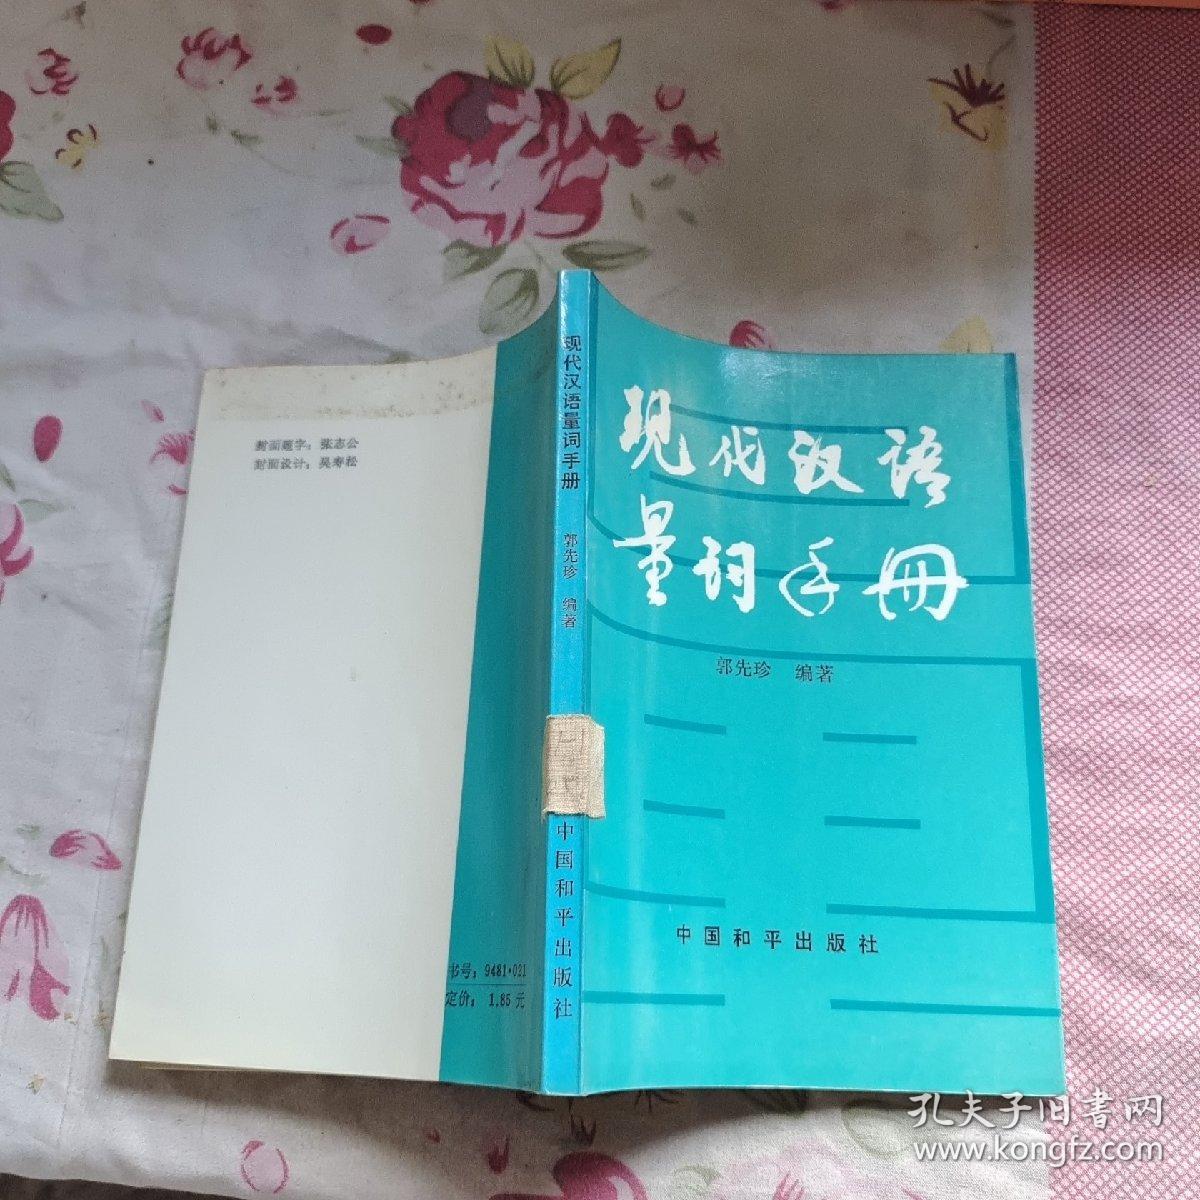 现代汉语量词手册